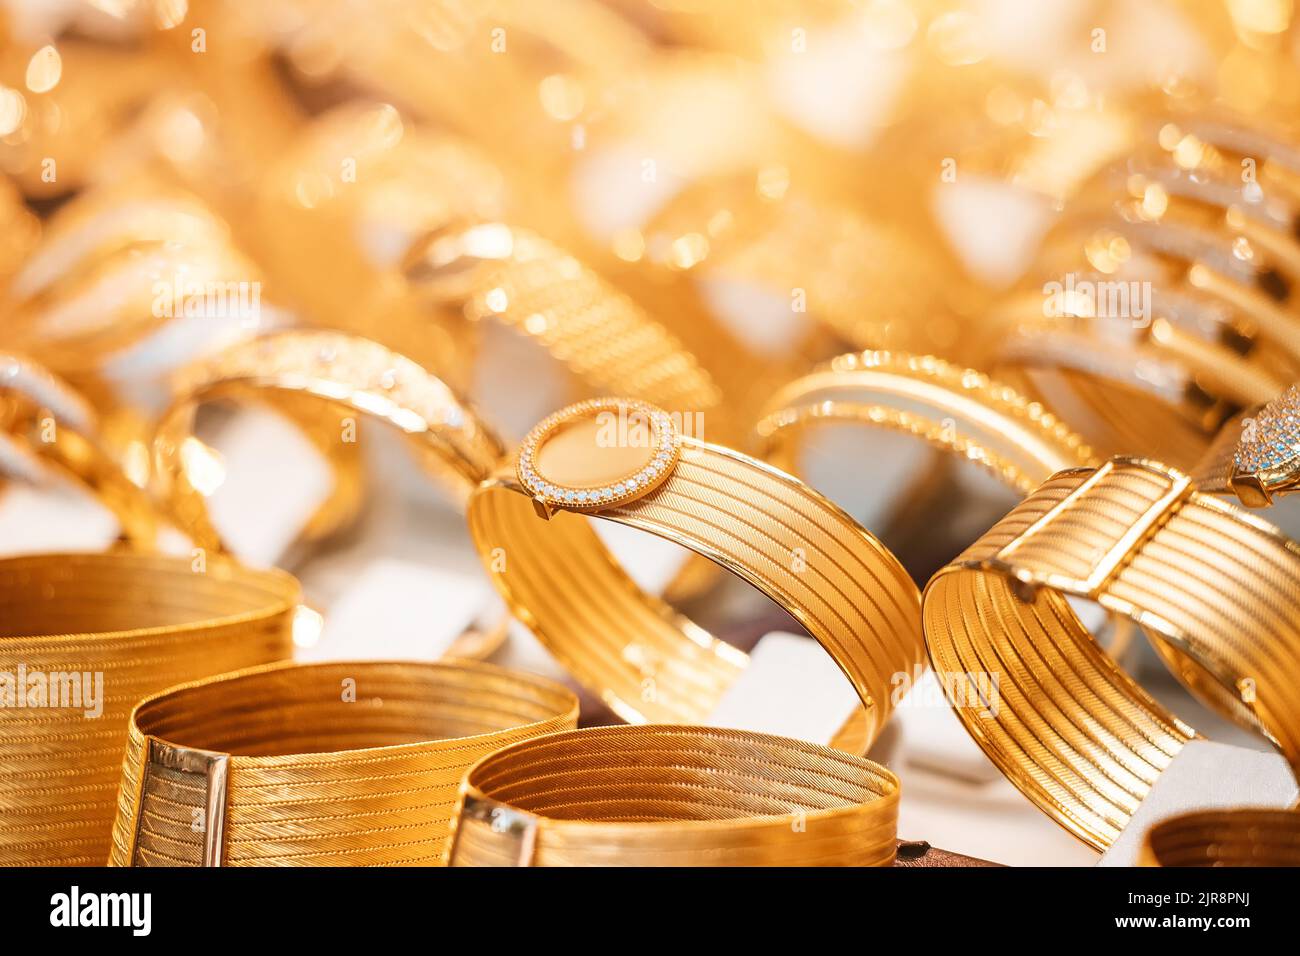 Ein Juweliergeschäft mit goldenem Schmuck, Armbändern und Accessoires. Das Konzept der Investitionen und Einsparungen mit Gold. Stockfoto